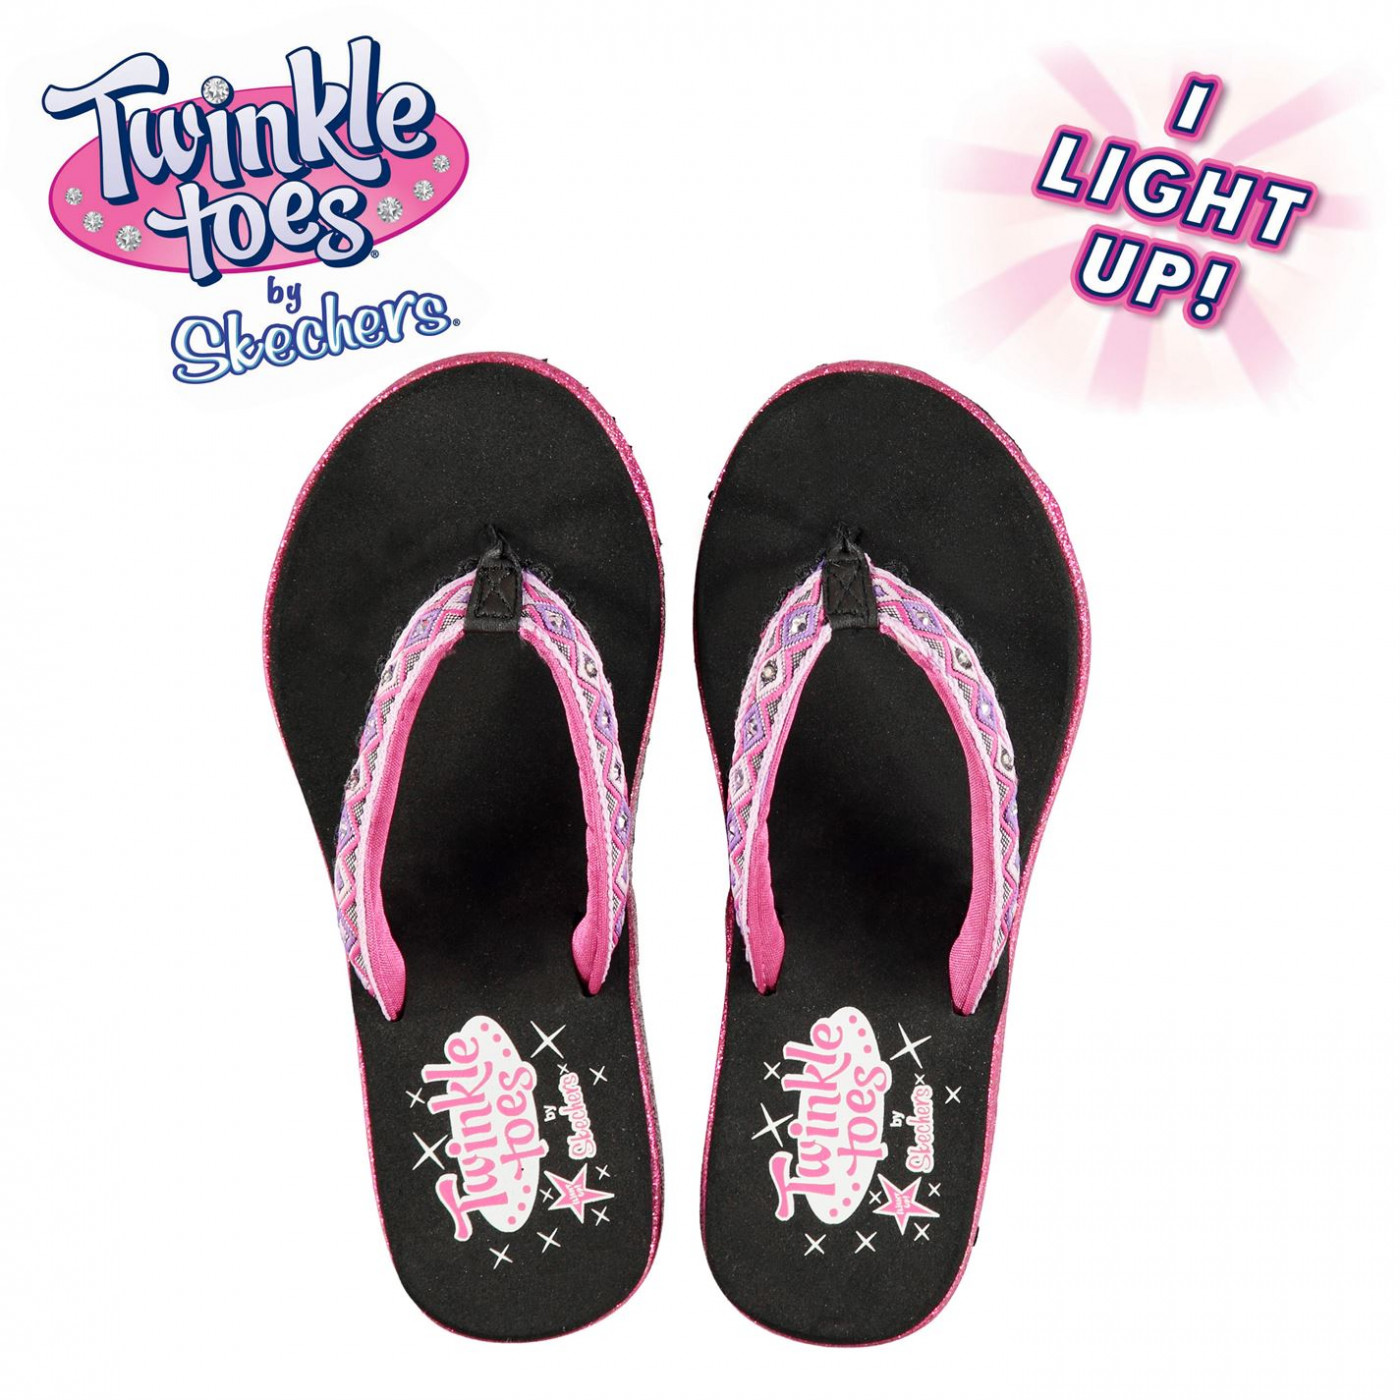 skechers twinkle toes sandals